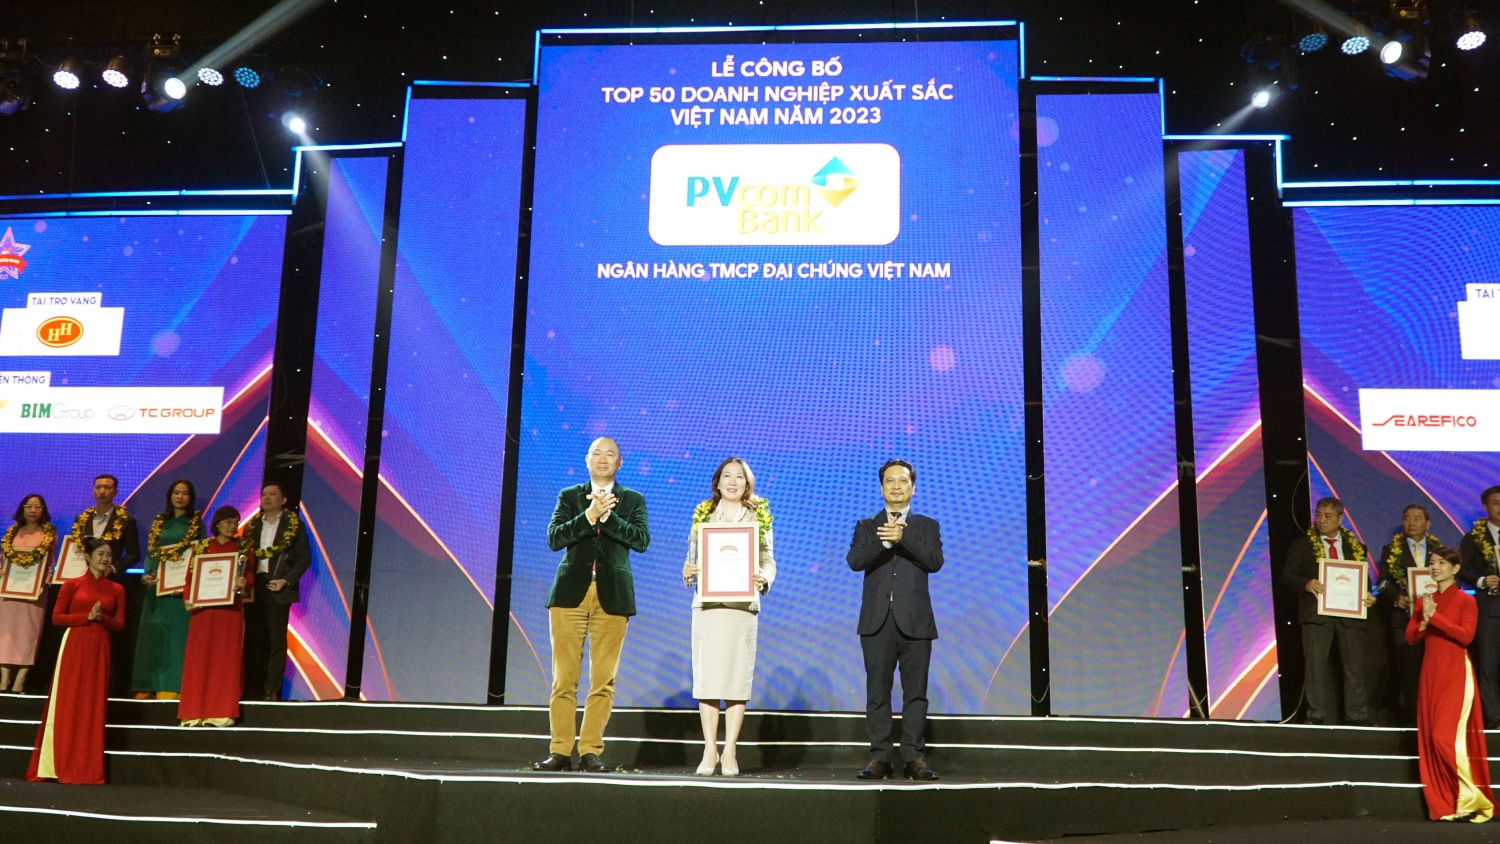 Petrovietnam và các doanh nghiệp Dầu khí tiếp tục khẳng định vị trí Top đầu các doanh nghiệp lớn nhất Việt Nam